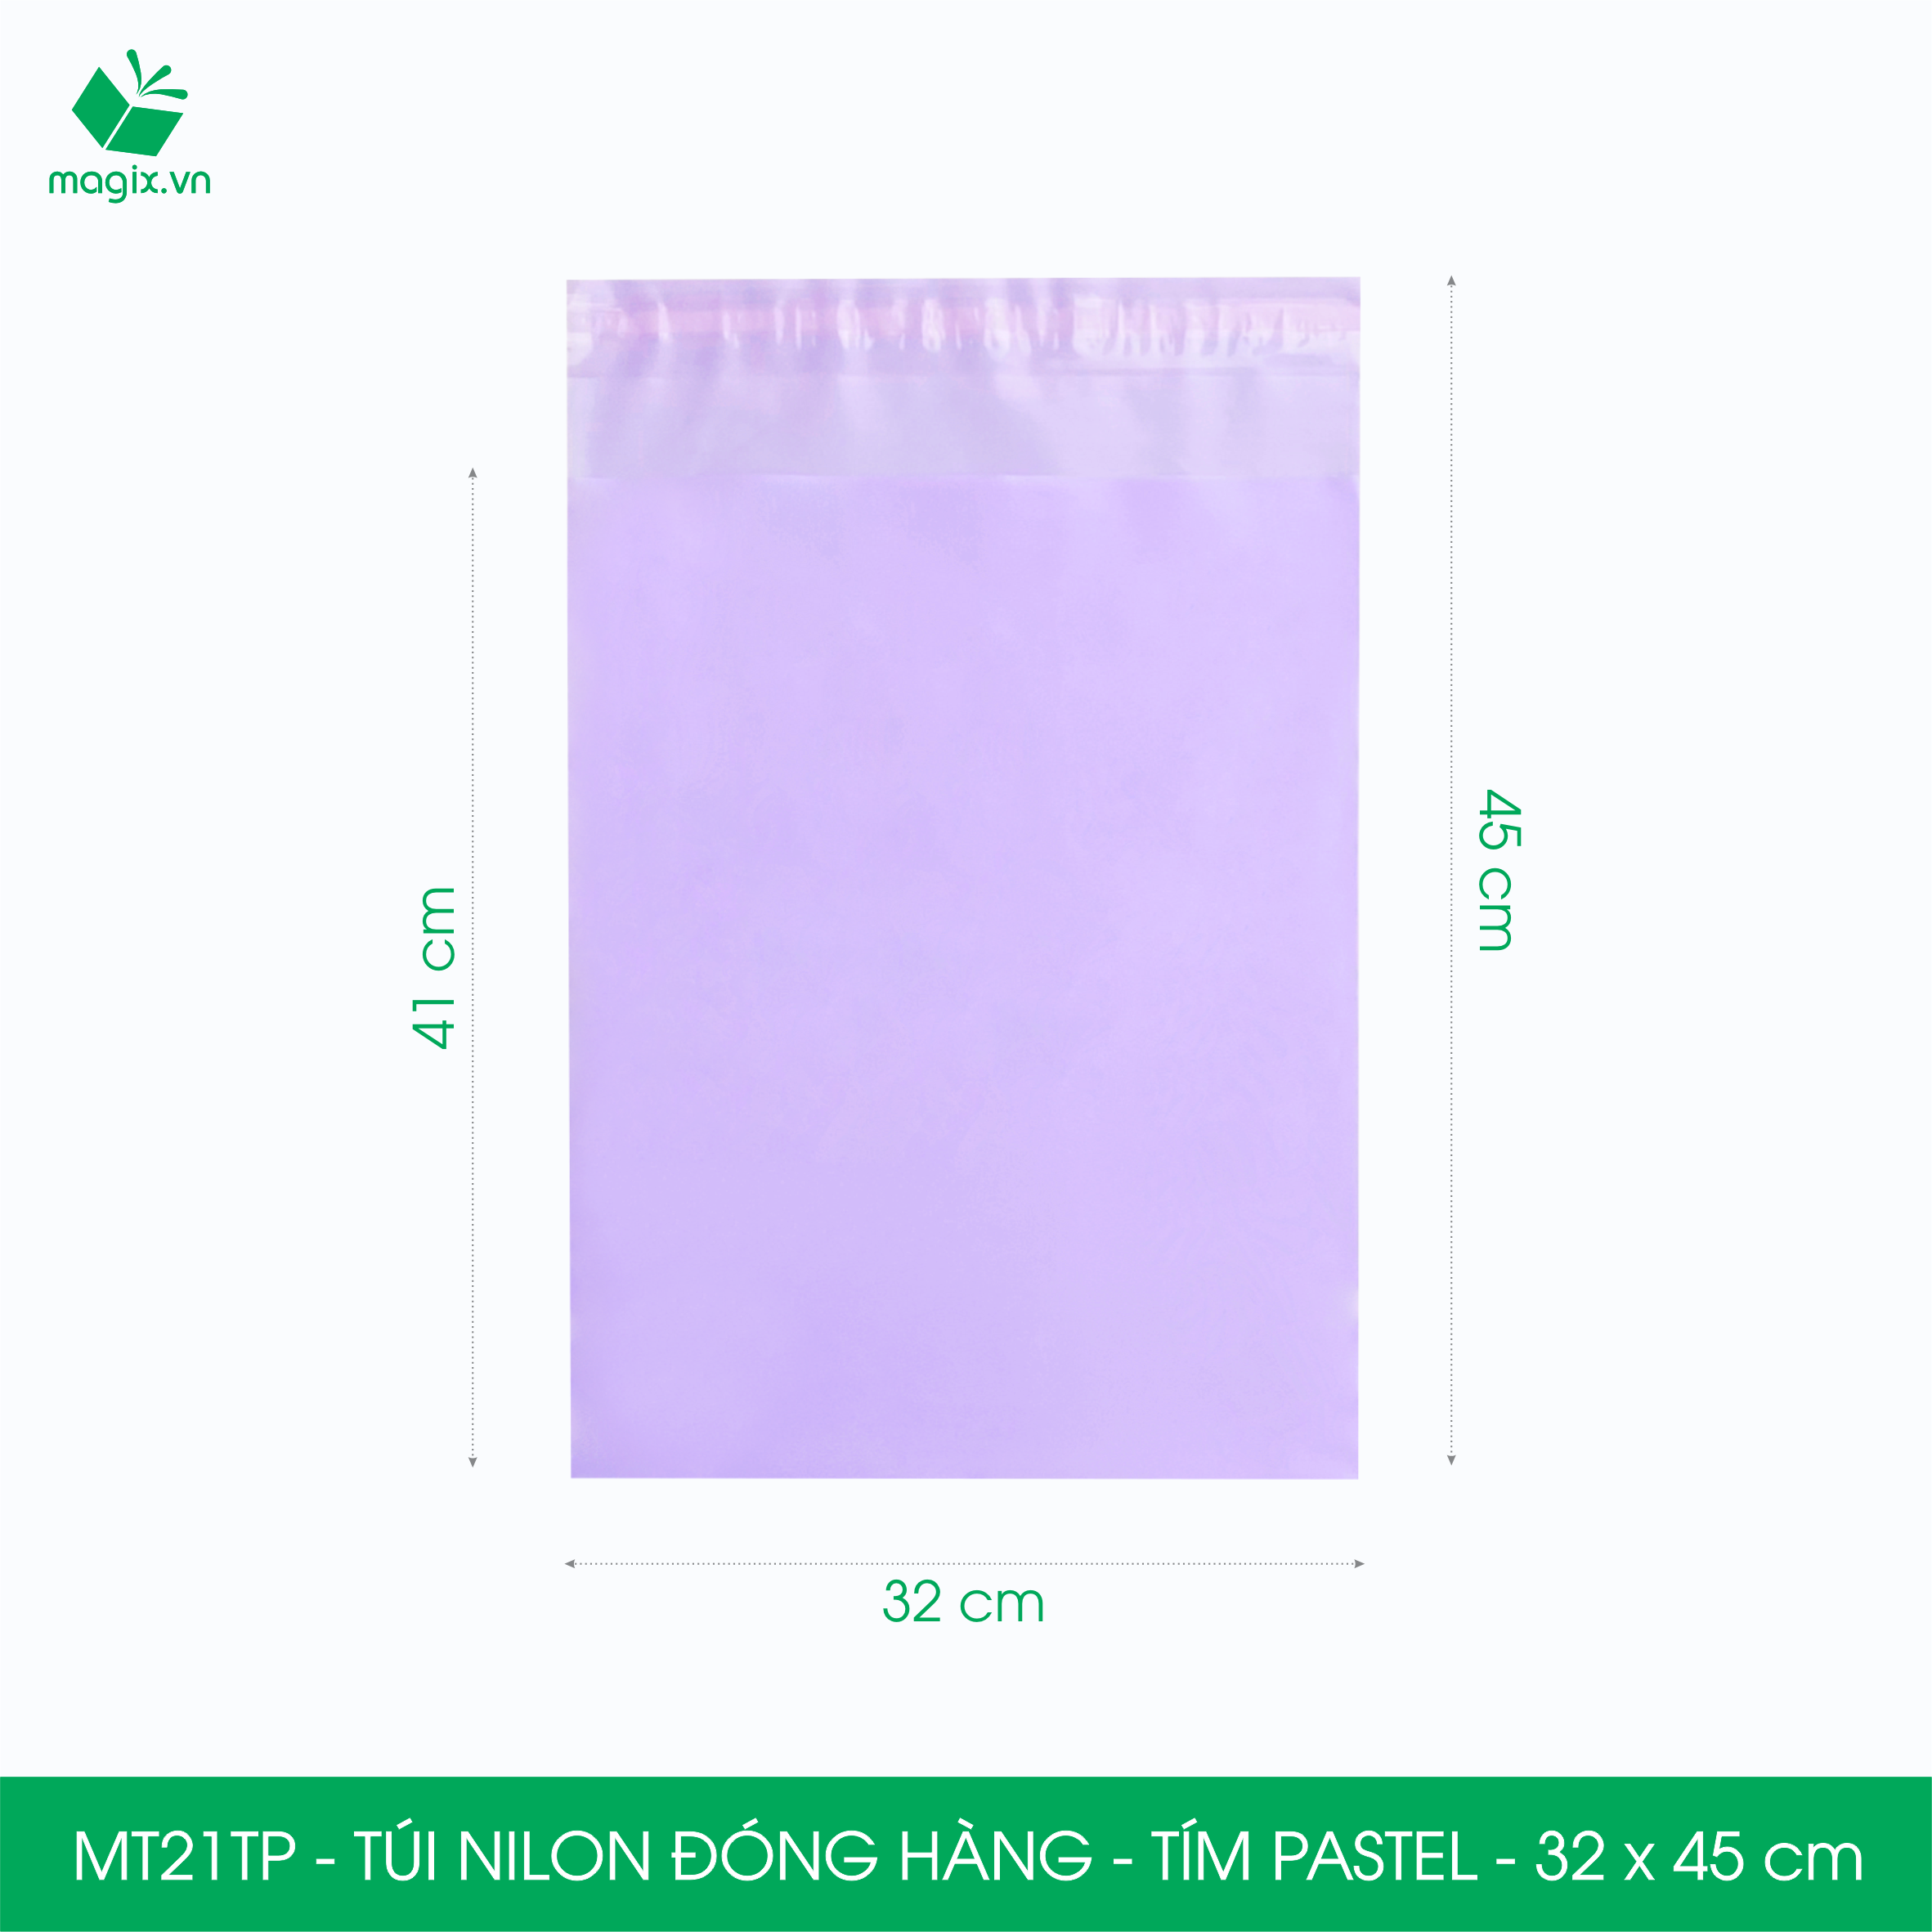 MT21TP - 32x45 cm - Túi nilon gói hàng - 100 túi niêm phong đóng hàng màu tím pastel